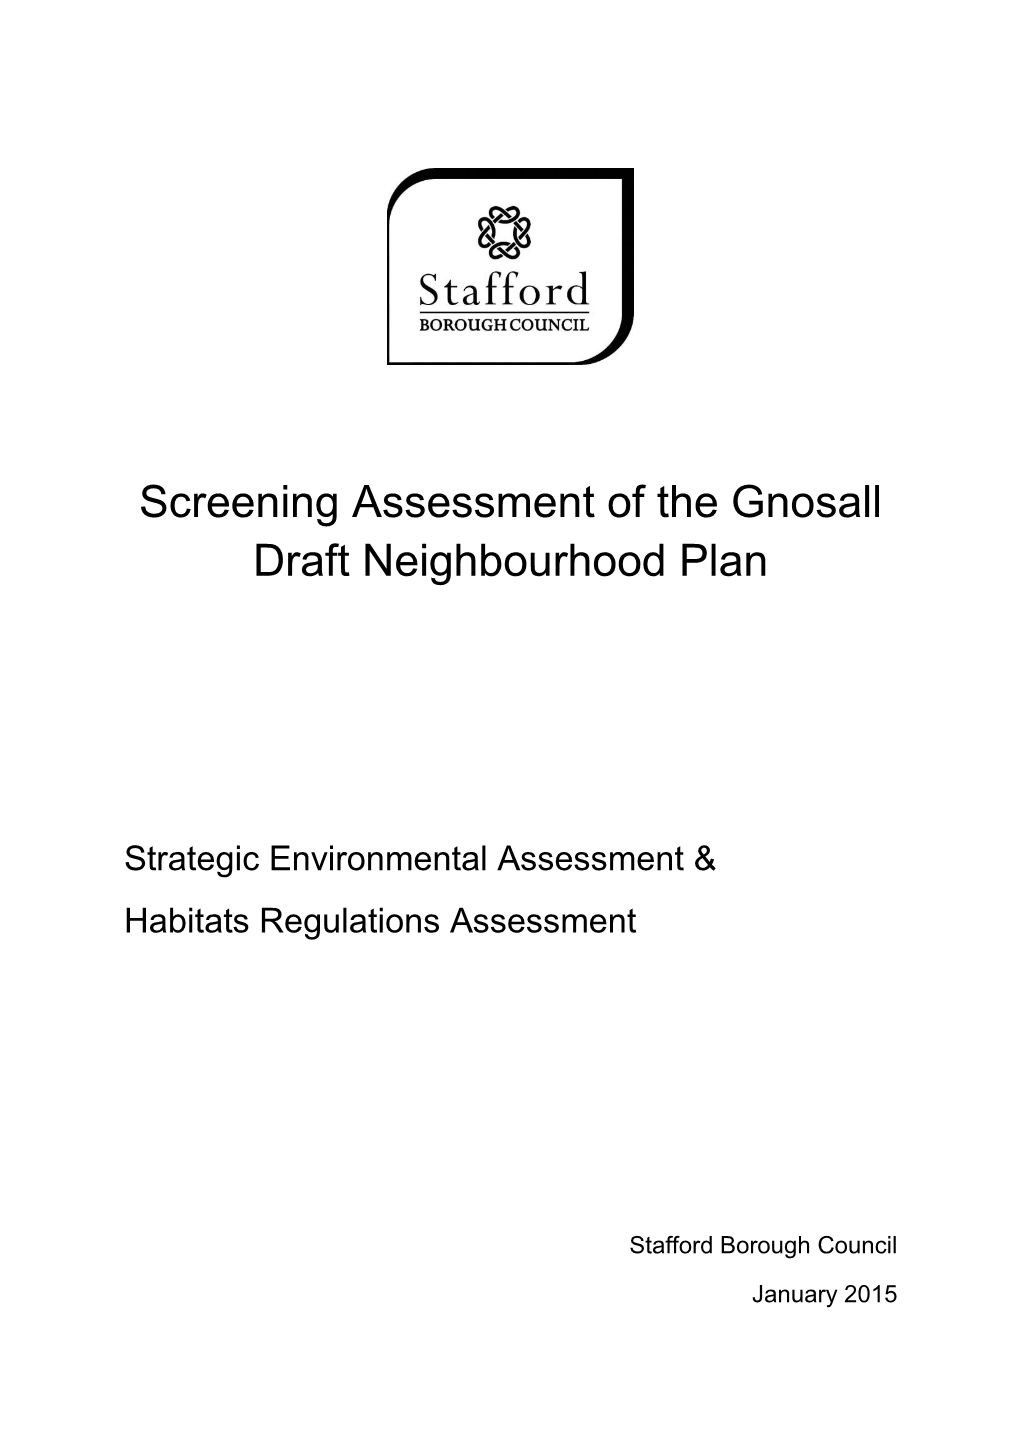 Screening Assessment of the Gnosall Draft Neighbourhood Plan